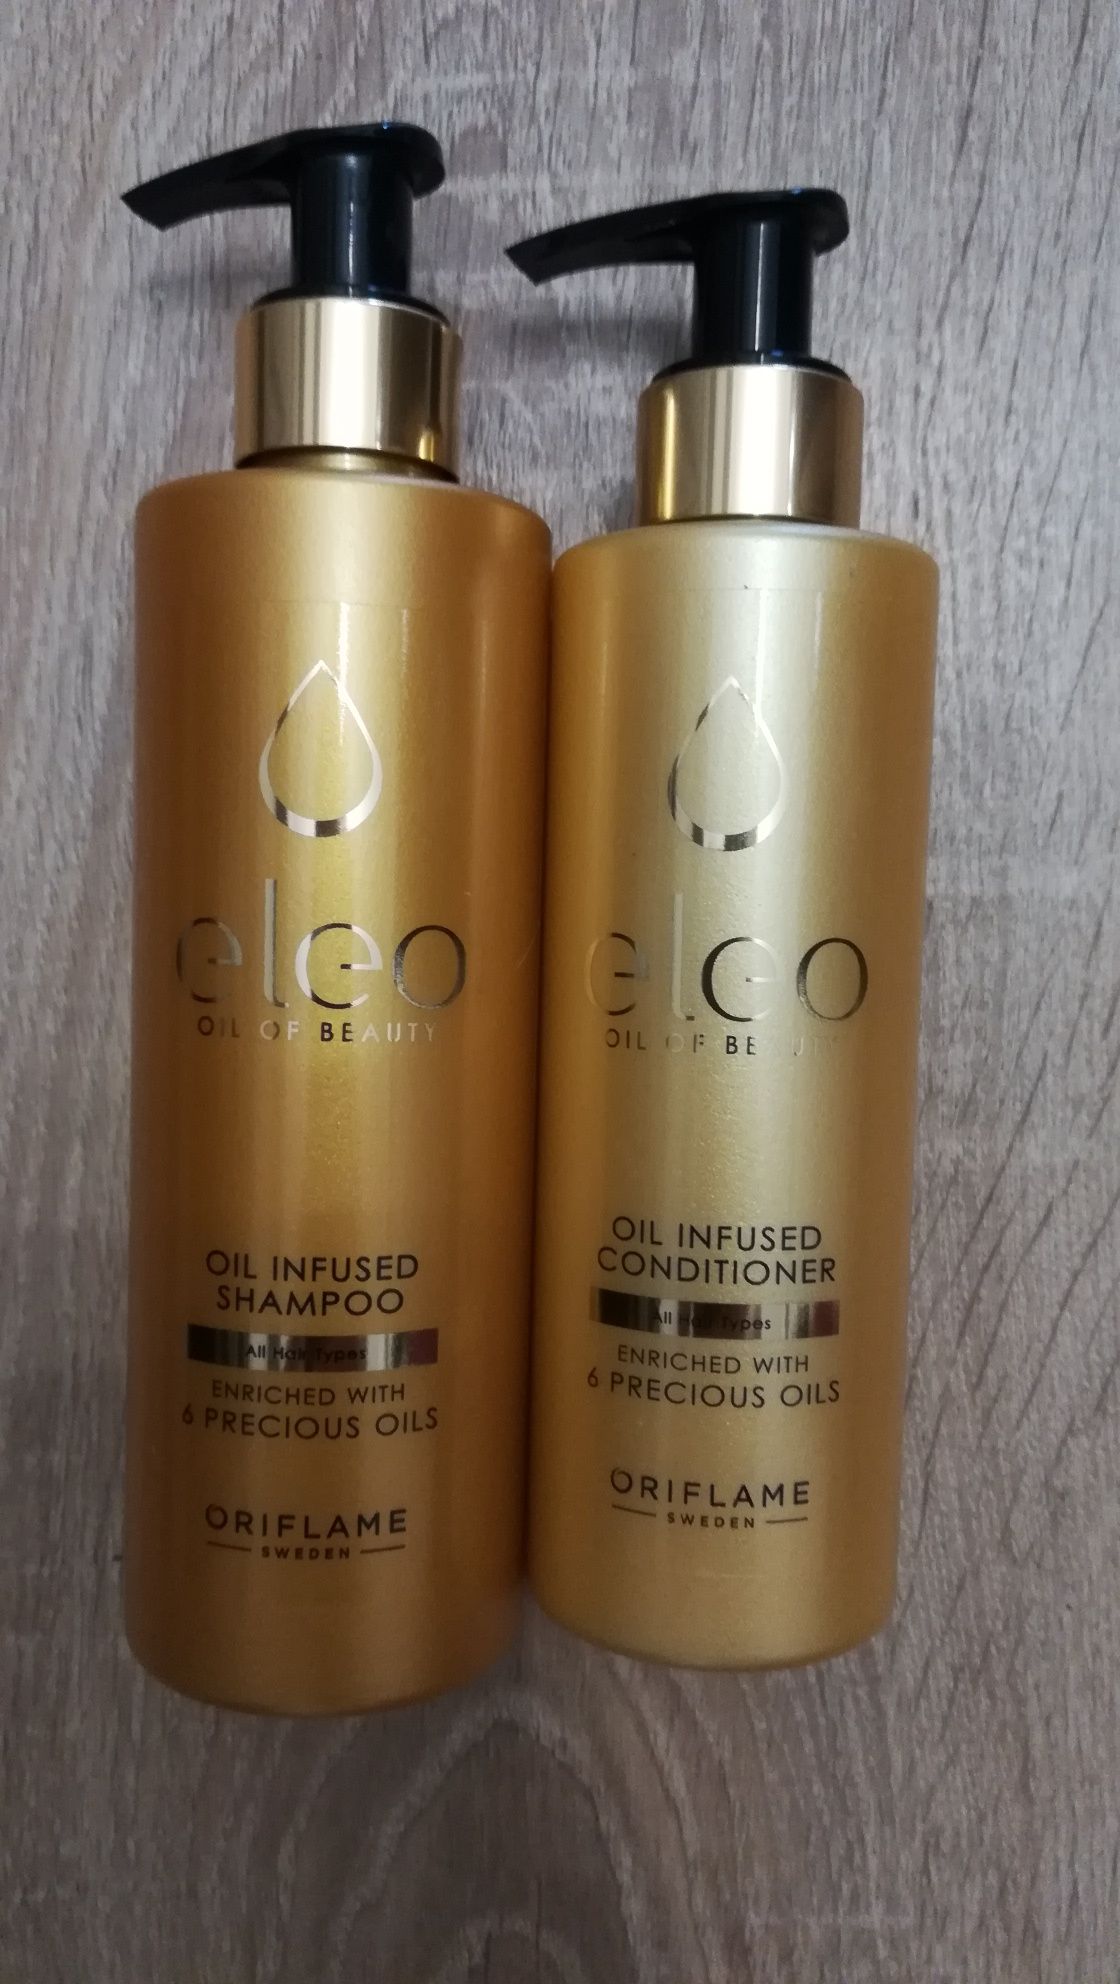 Eleo szampon i odżywka do włosów, Oriflame